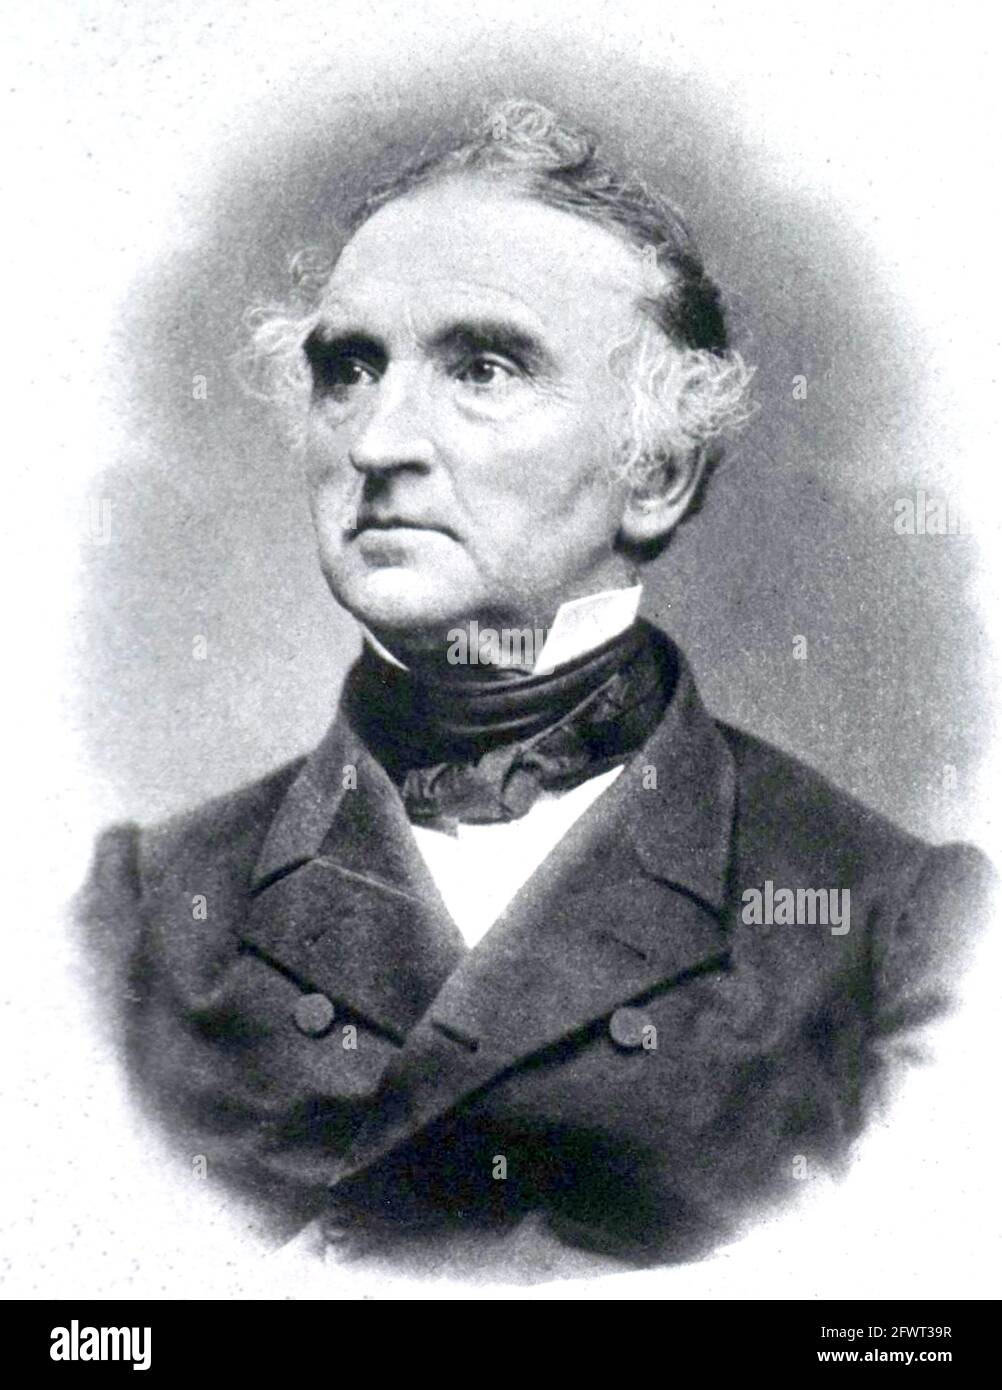 JUTUS von LIEBIG (1803-1873) scientifique allemand et l'un des fondateurs de la chimie organique, vers 1866. Banque D'Images